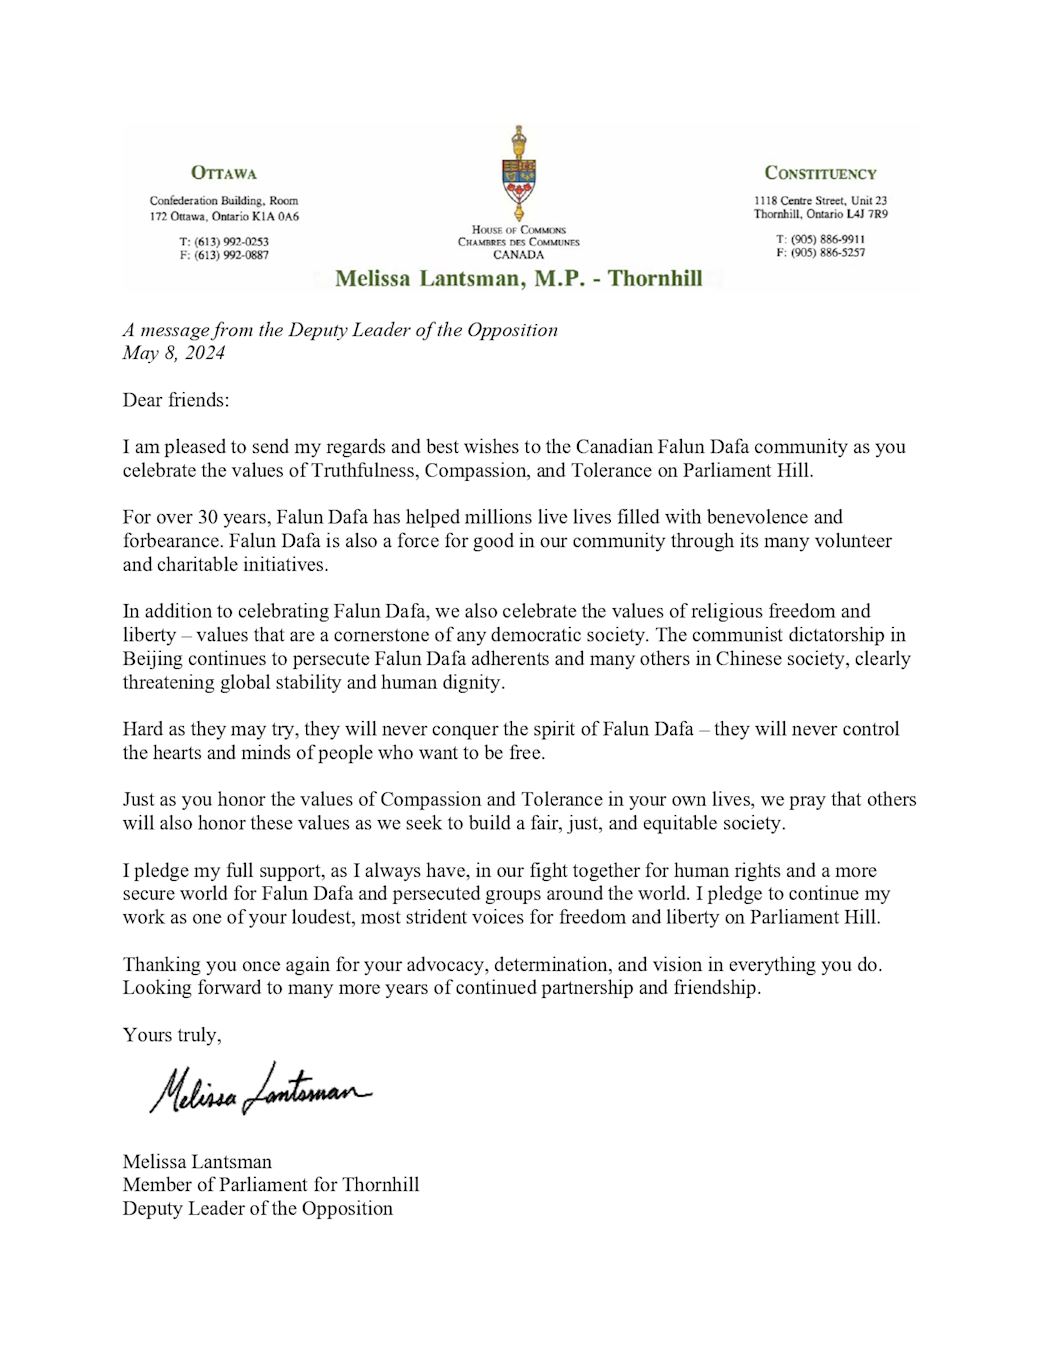 '图3：反对党副领袖梅丽莎·兰兹曼（Melissa Lantsman）的贺信'